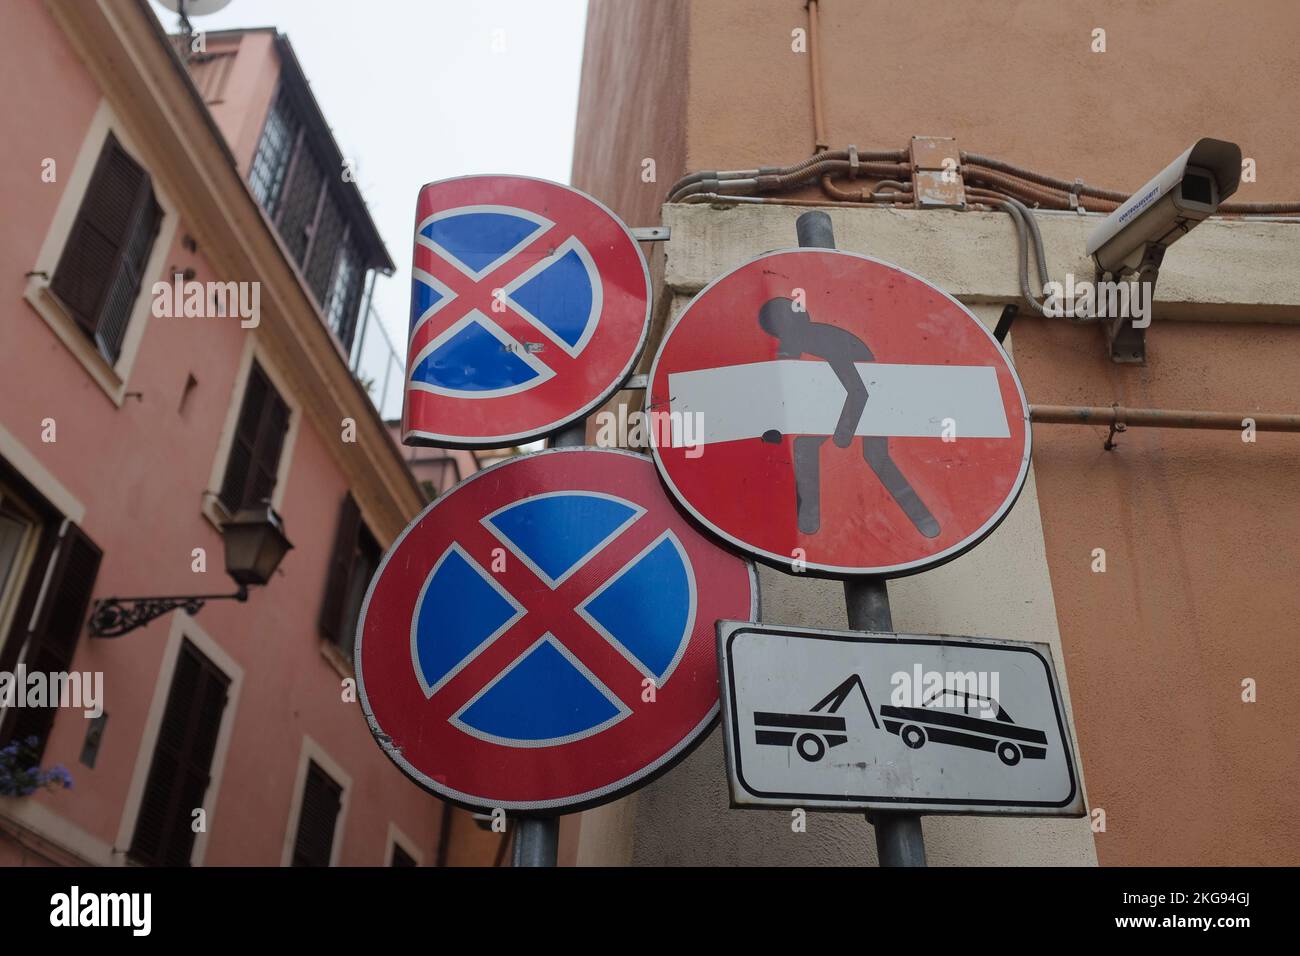 Roma, Italia: Stravagante Street art dell'artista di strada francese, Clet, su un cartello stradale senza ingresso a Trastevere. L'uomo nero del bastone porta la barra bianca sul cerchio rosso. Foto Stock